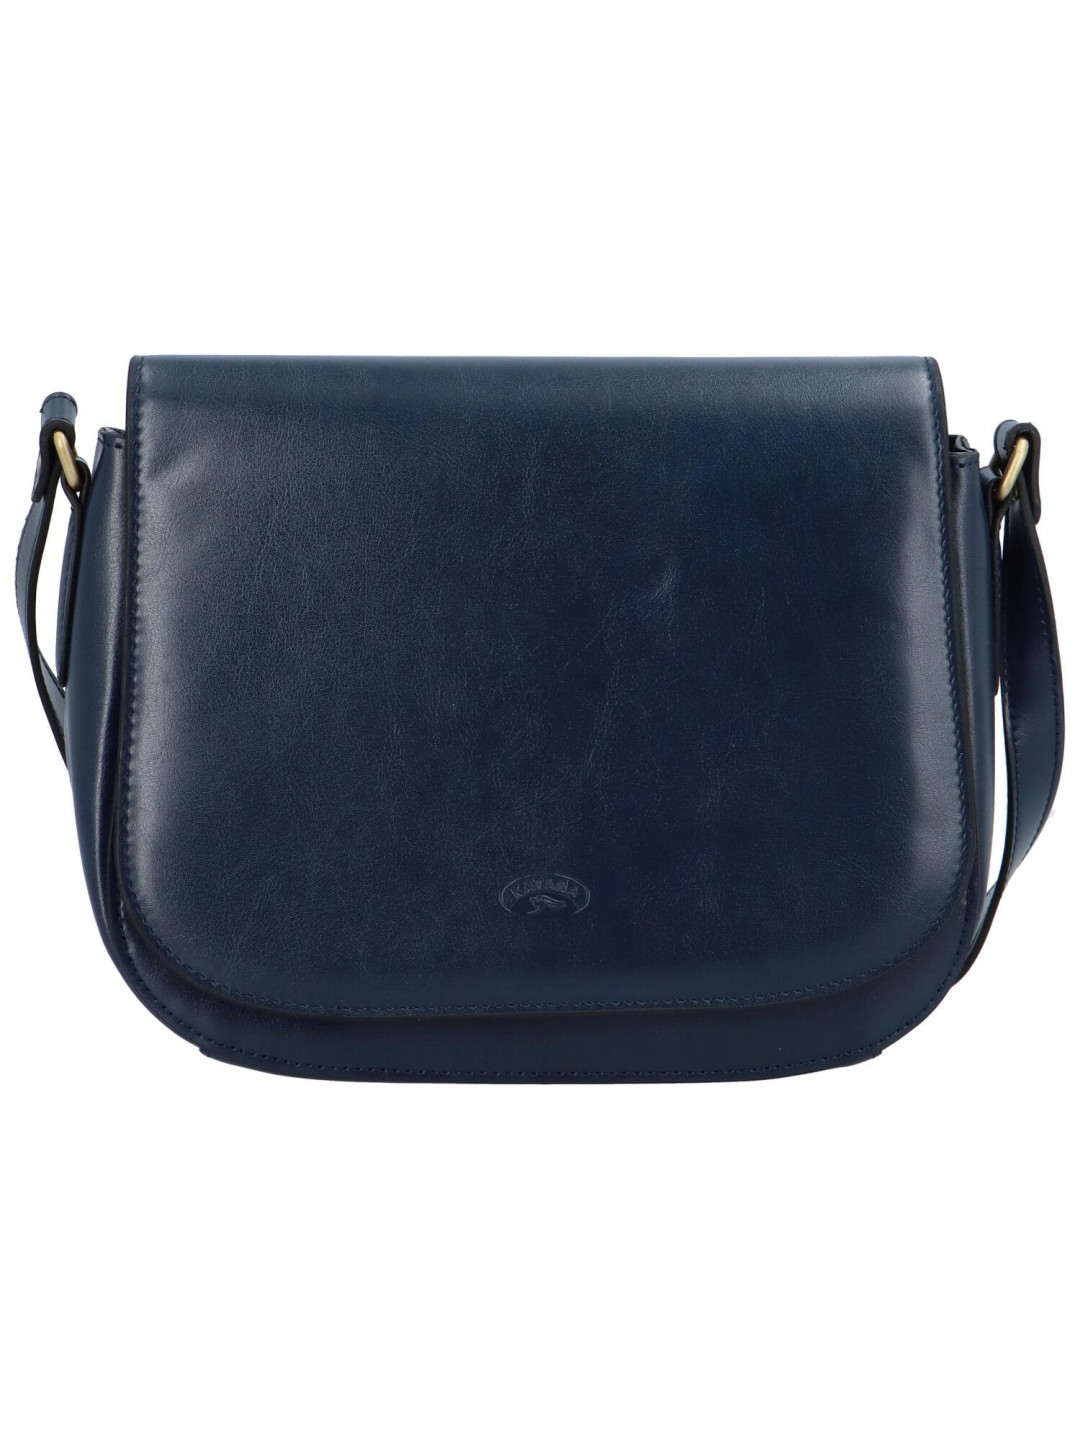 Luxusní dámská kožená kabelka Katana Ema modrá